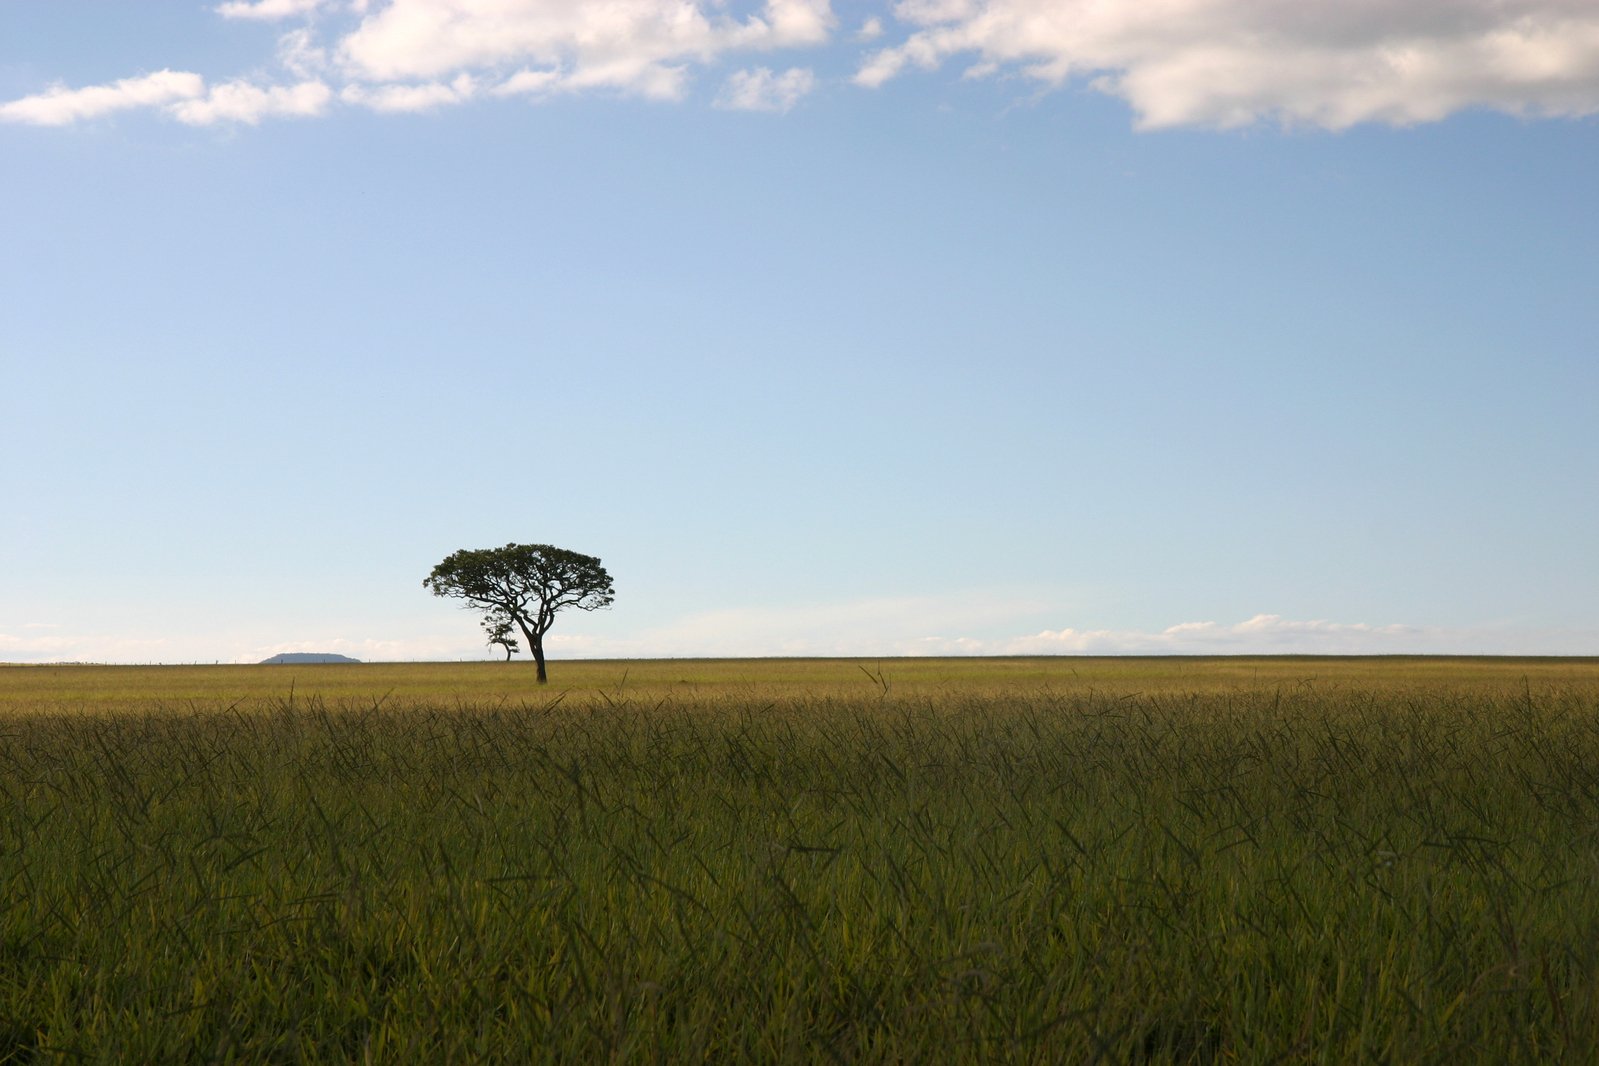 the lone tree is in a wide open field